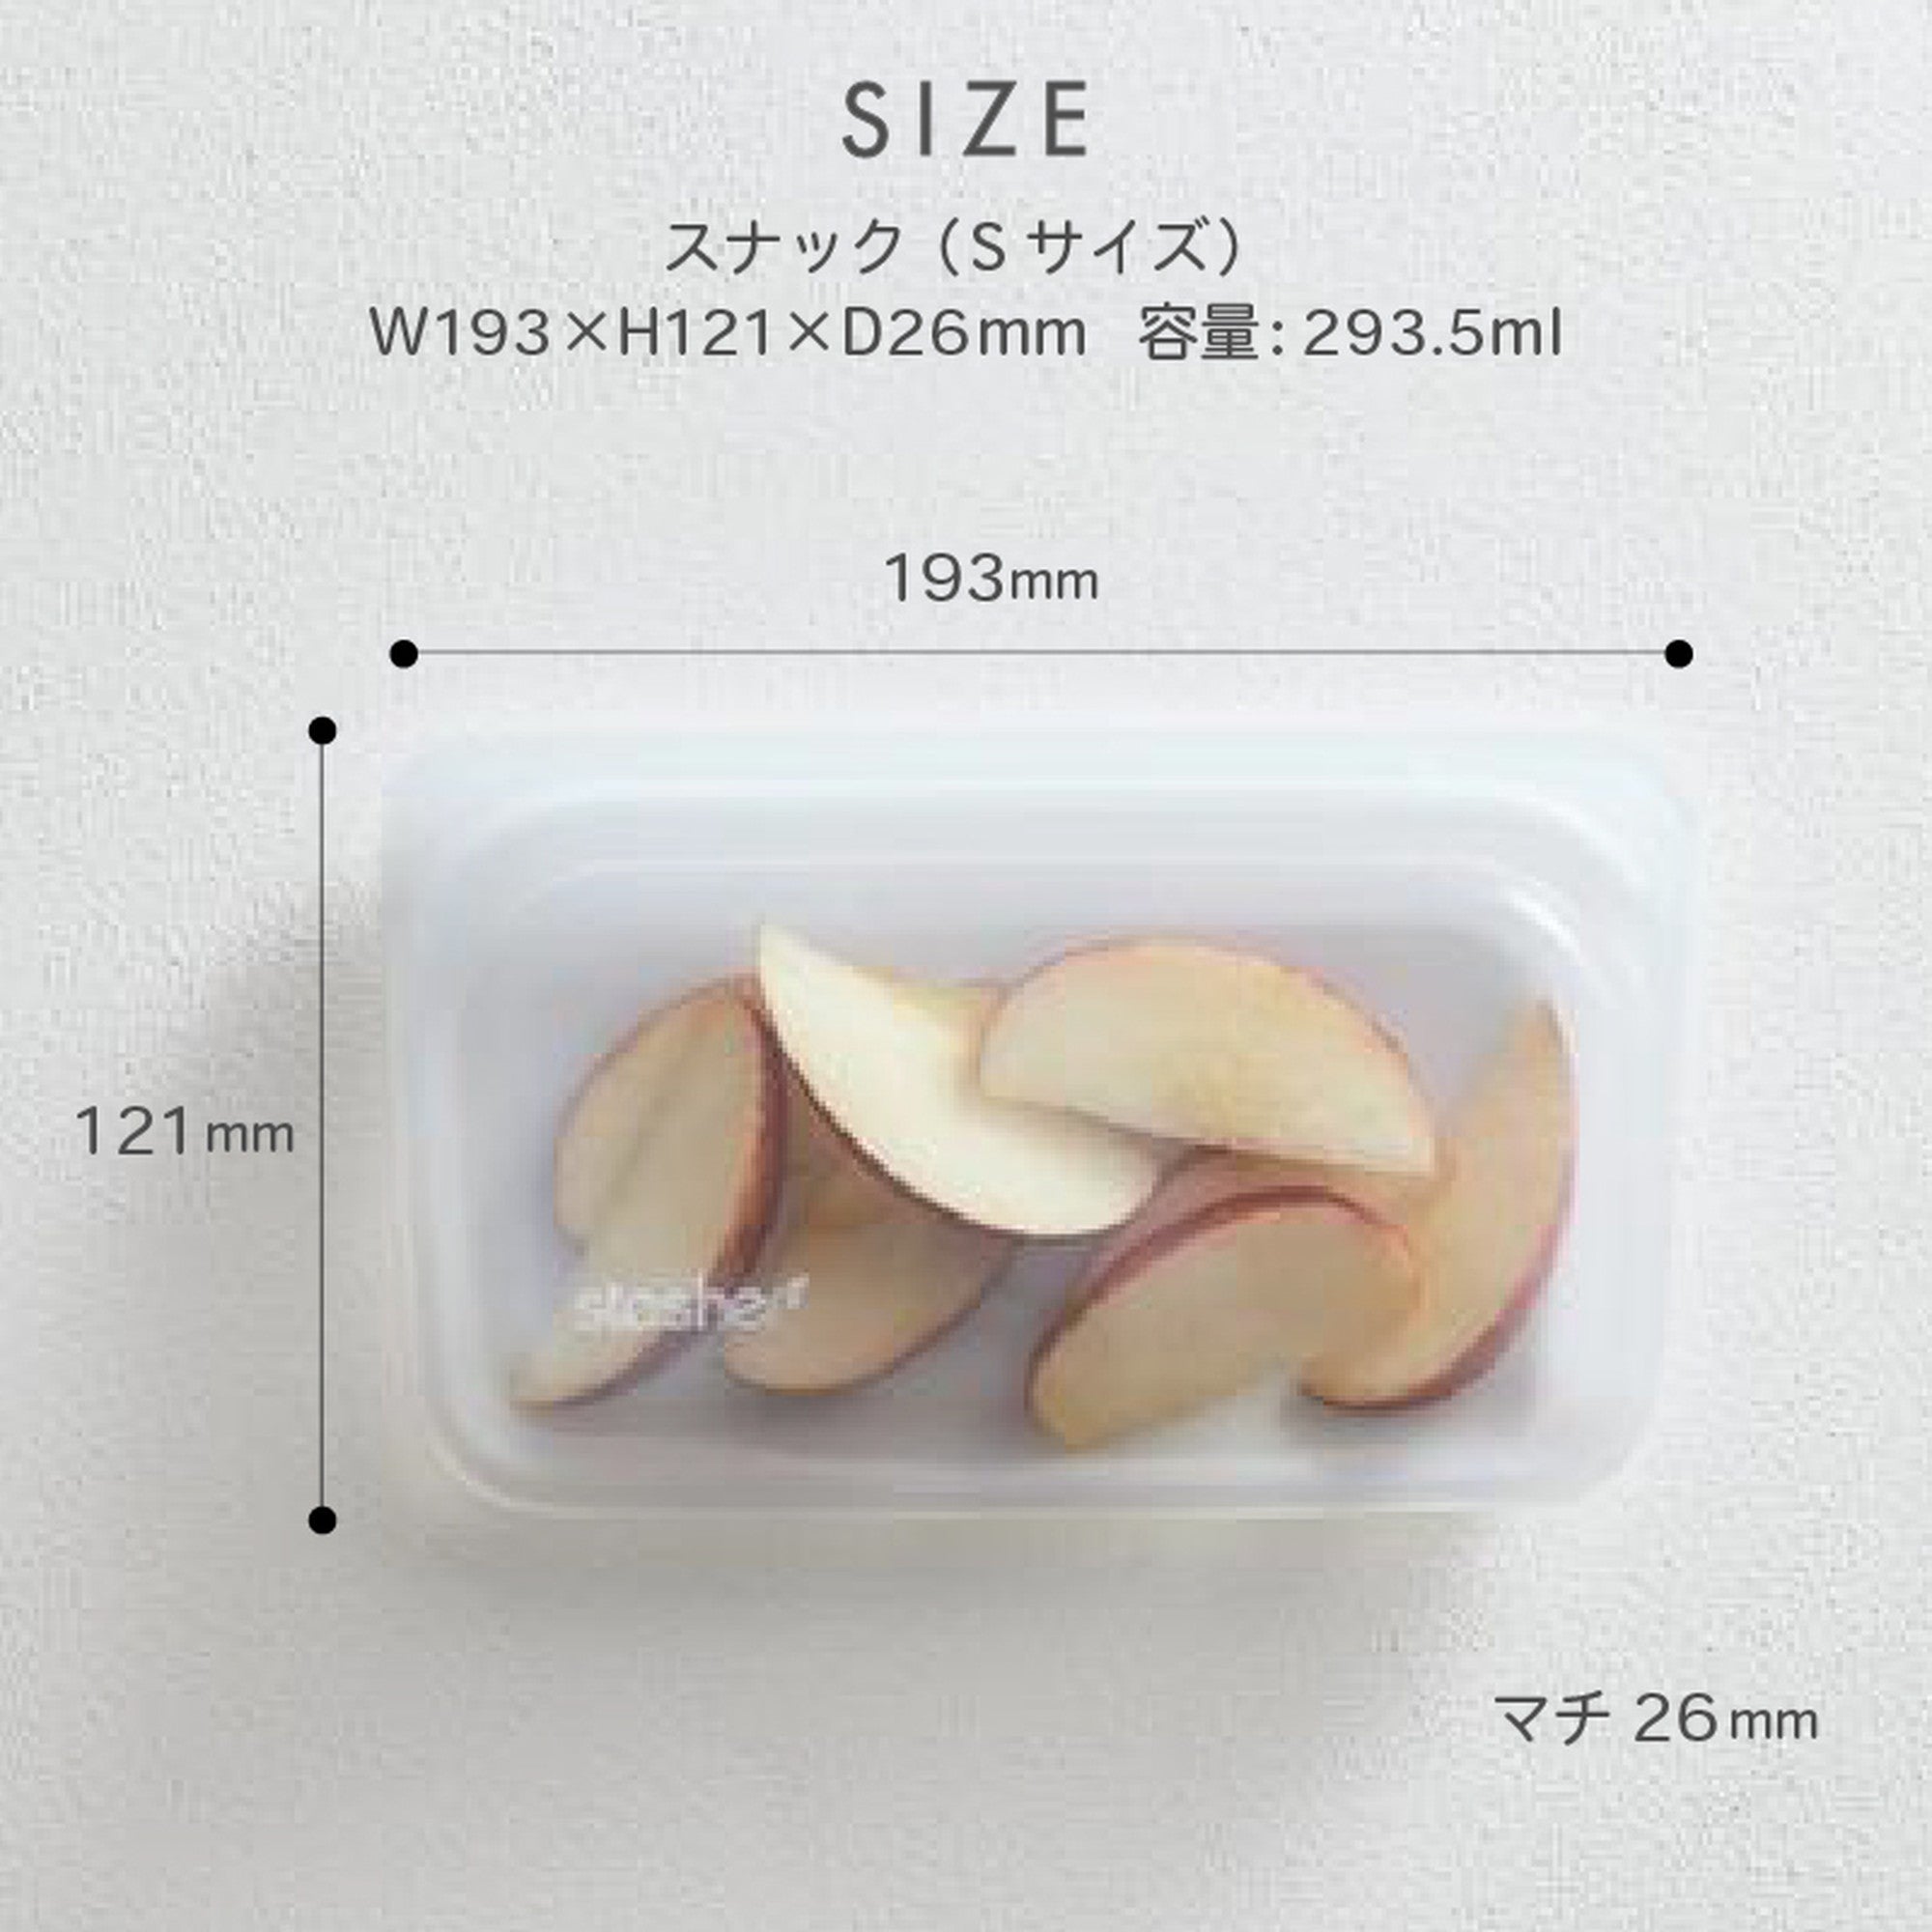 【2個セット】スタッシャー シリコンバッグ stasher 日本正規品 スナック Sサイズ 19色